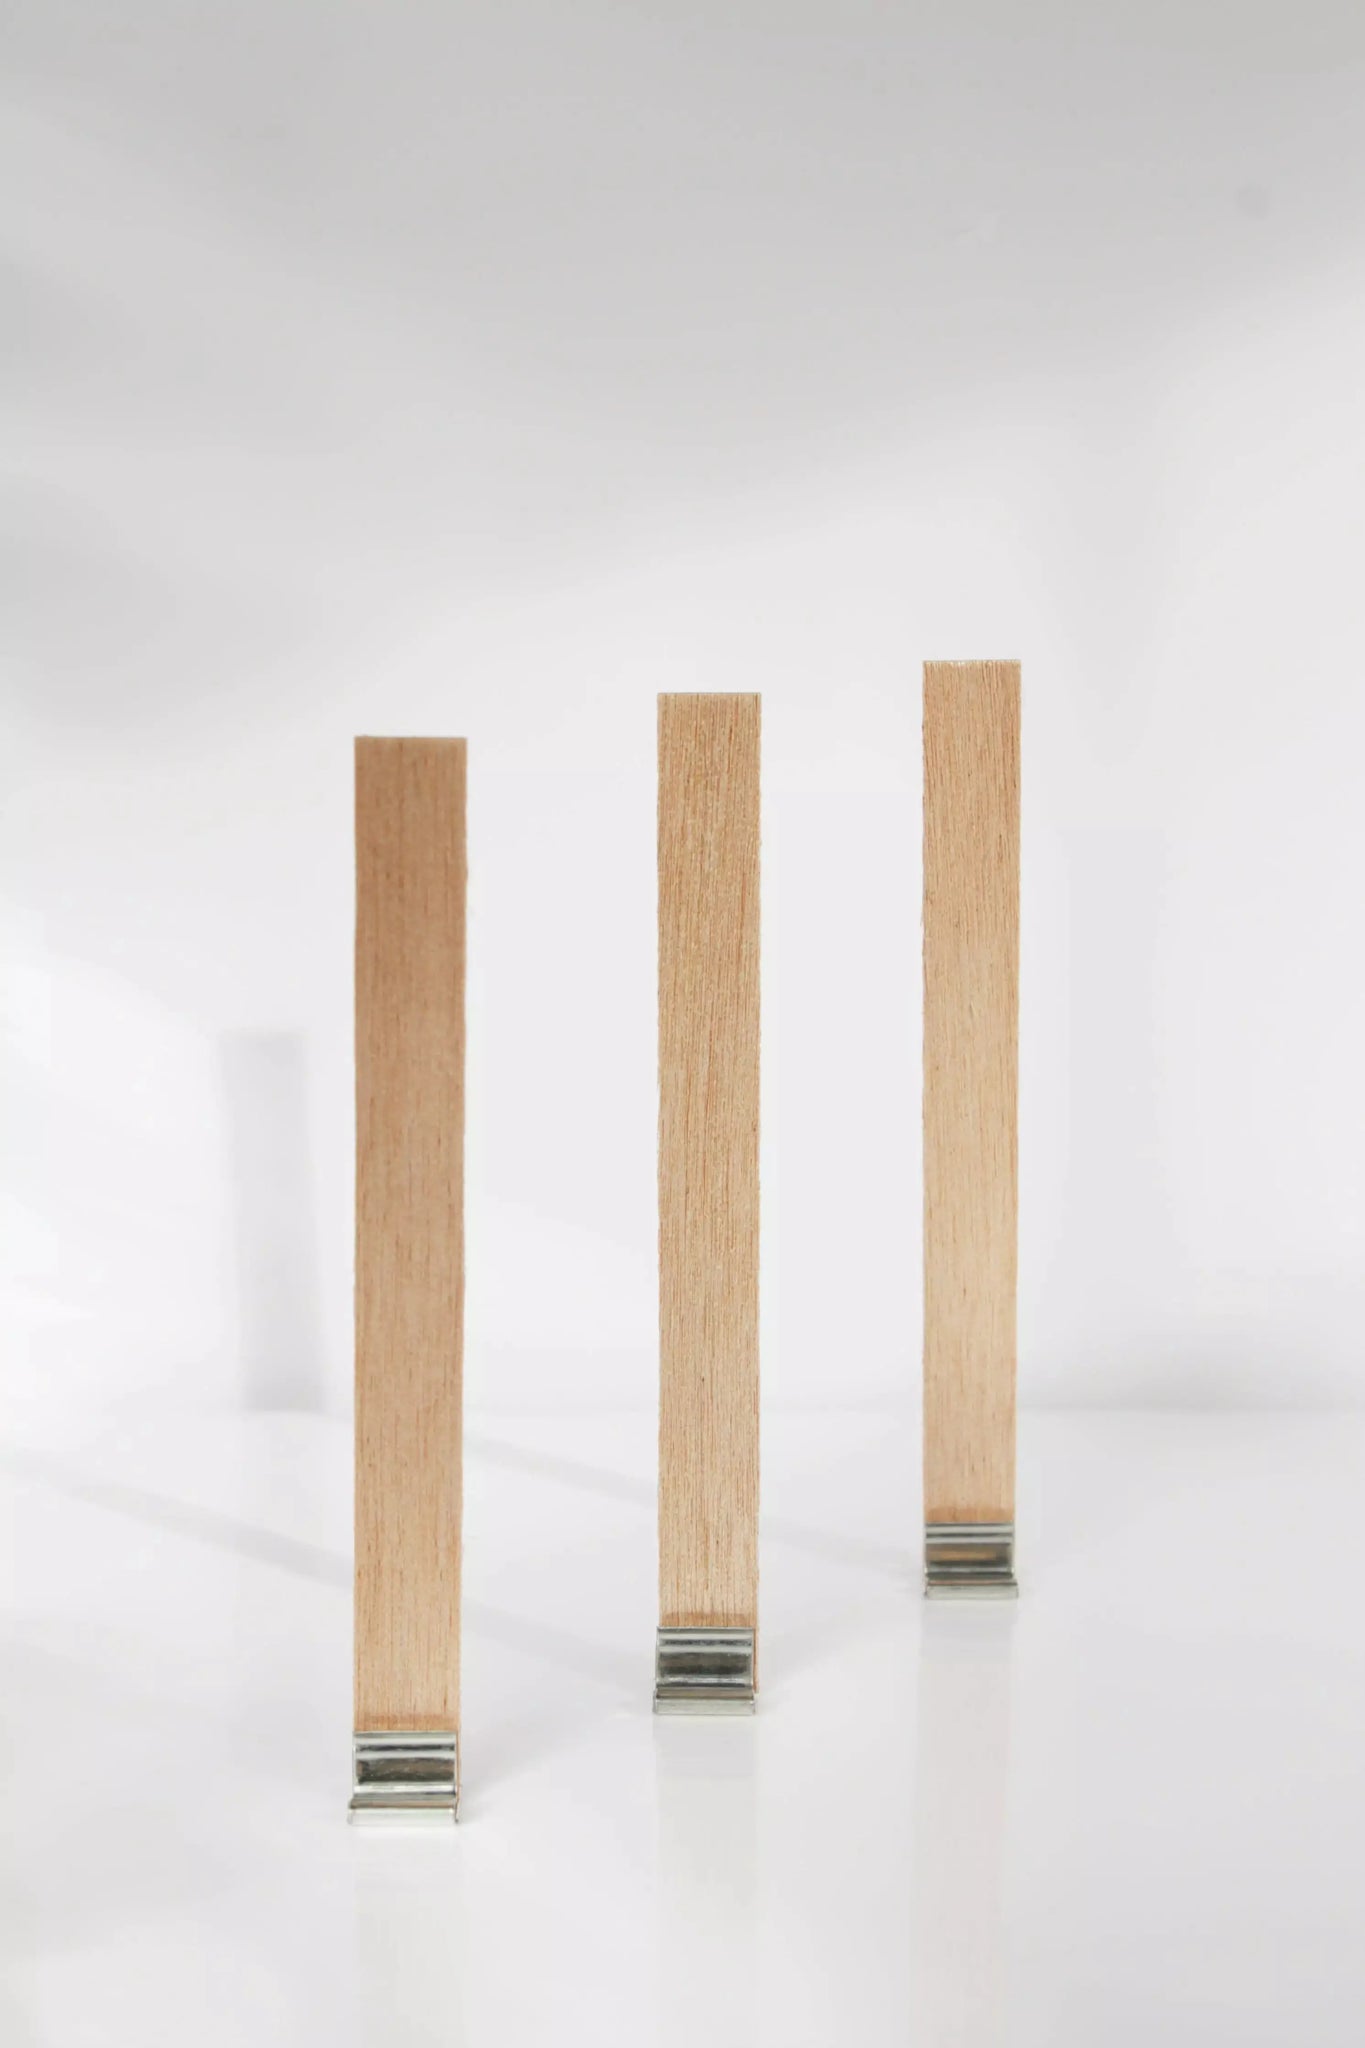 Mechas de madera de 8x90 mm para hacer velas. ¡Fáciles de usar